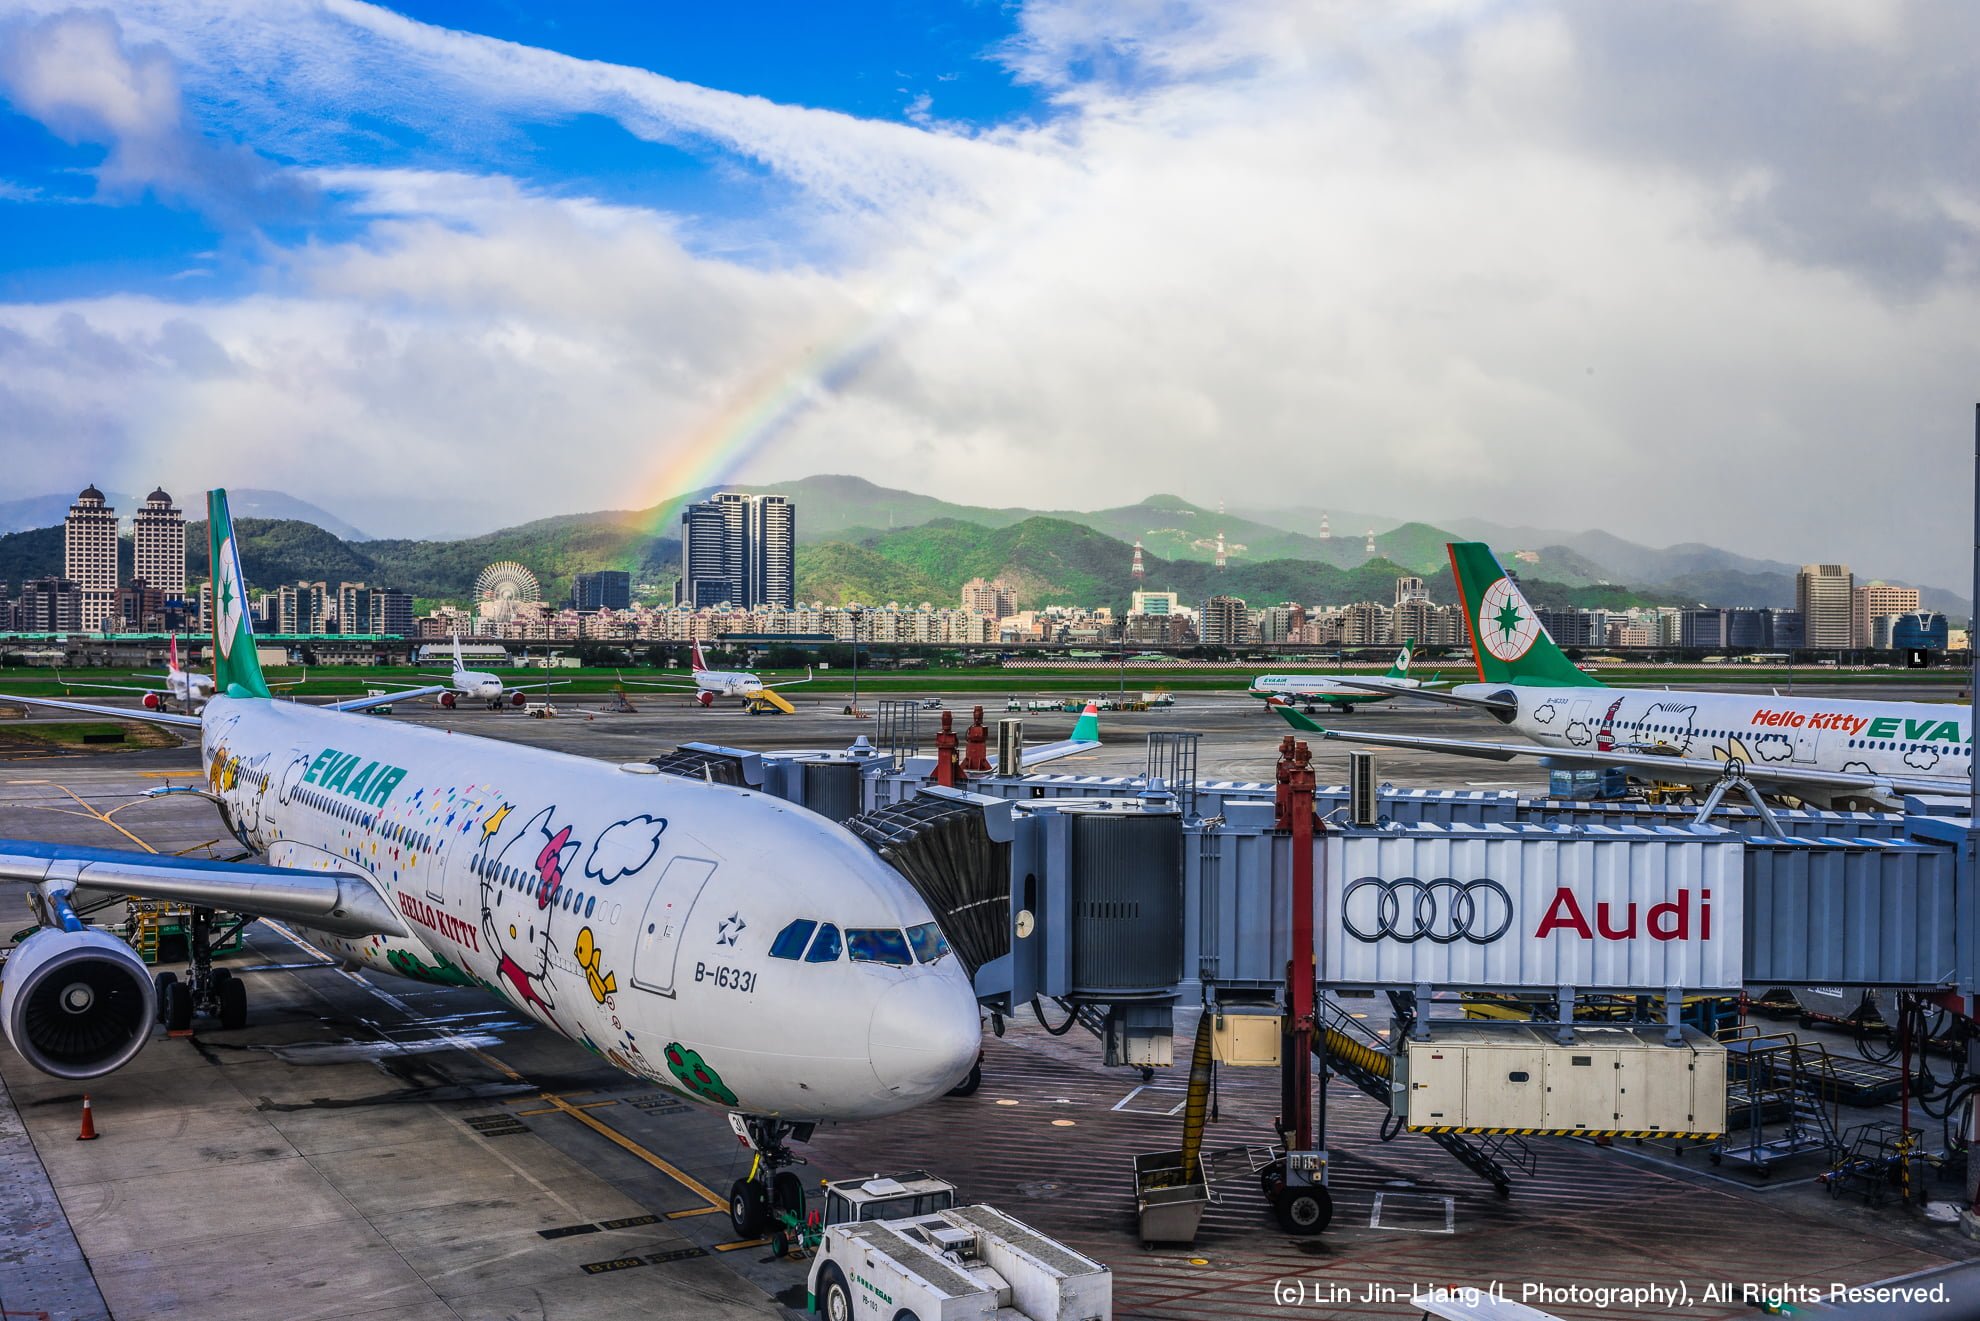 遠振資訊 Twnoc VPS 主機、虛擬主機 75 折優惠折扣碼 ~2020 EverGreen Airline Hello Kitty Rainbow Taipei Songshan Airport 長榮航空 彩虹 松山機場